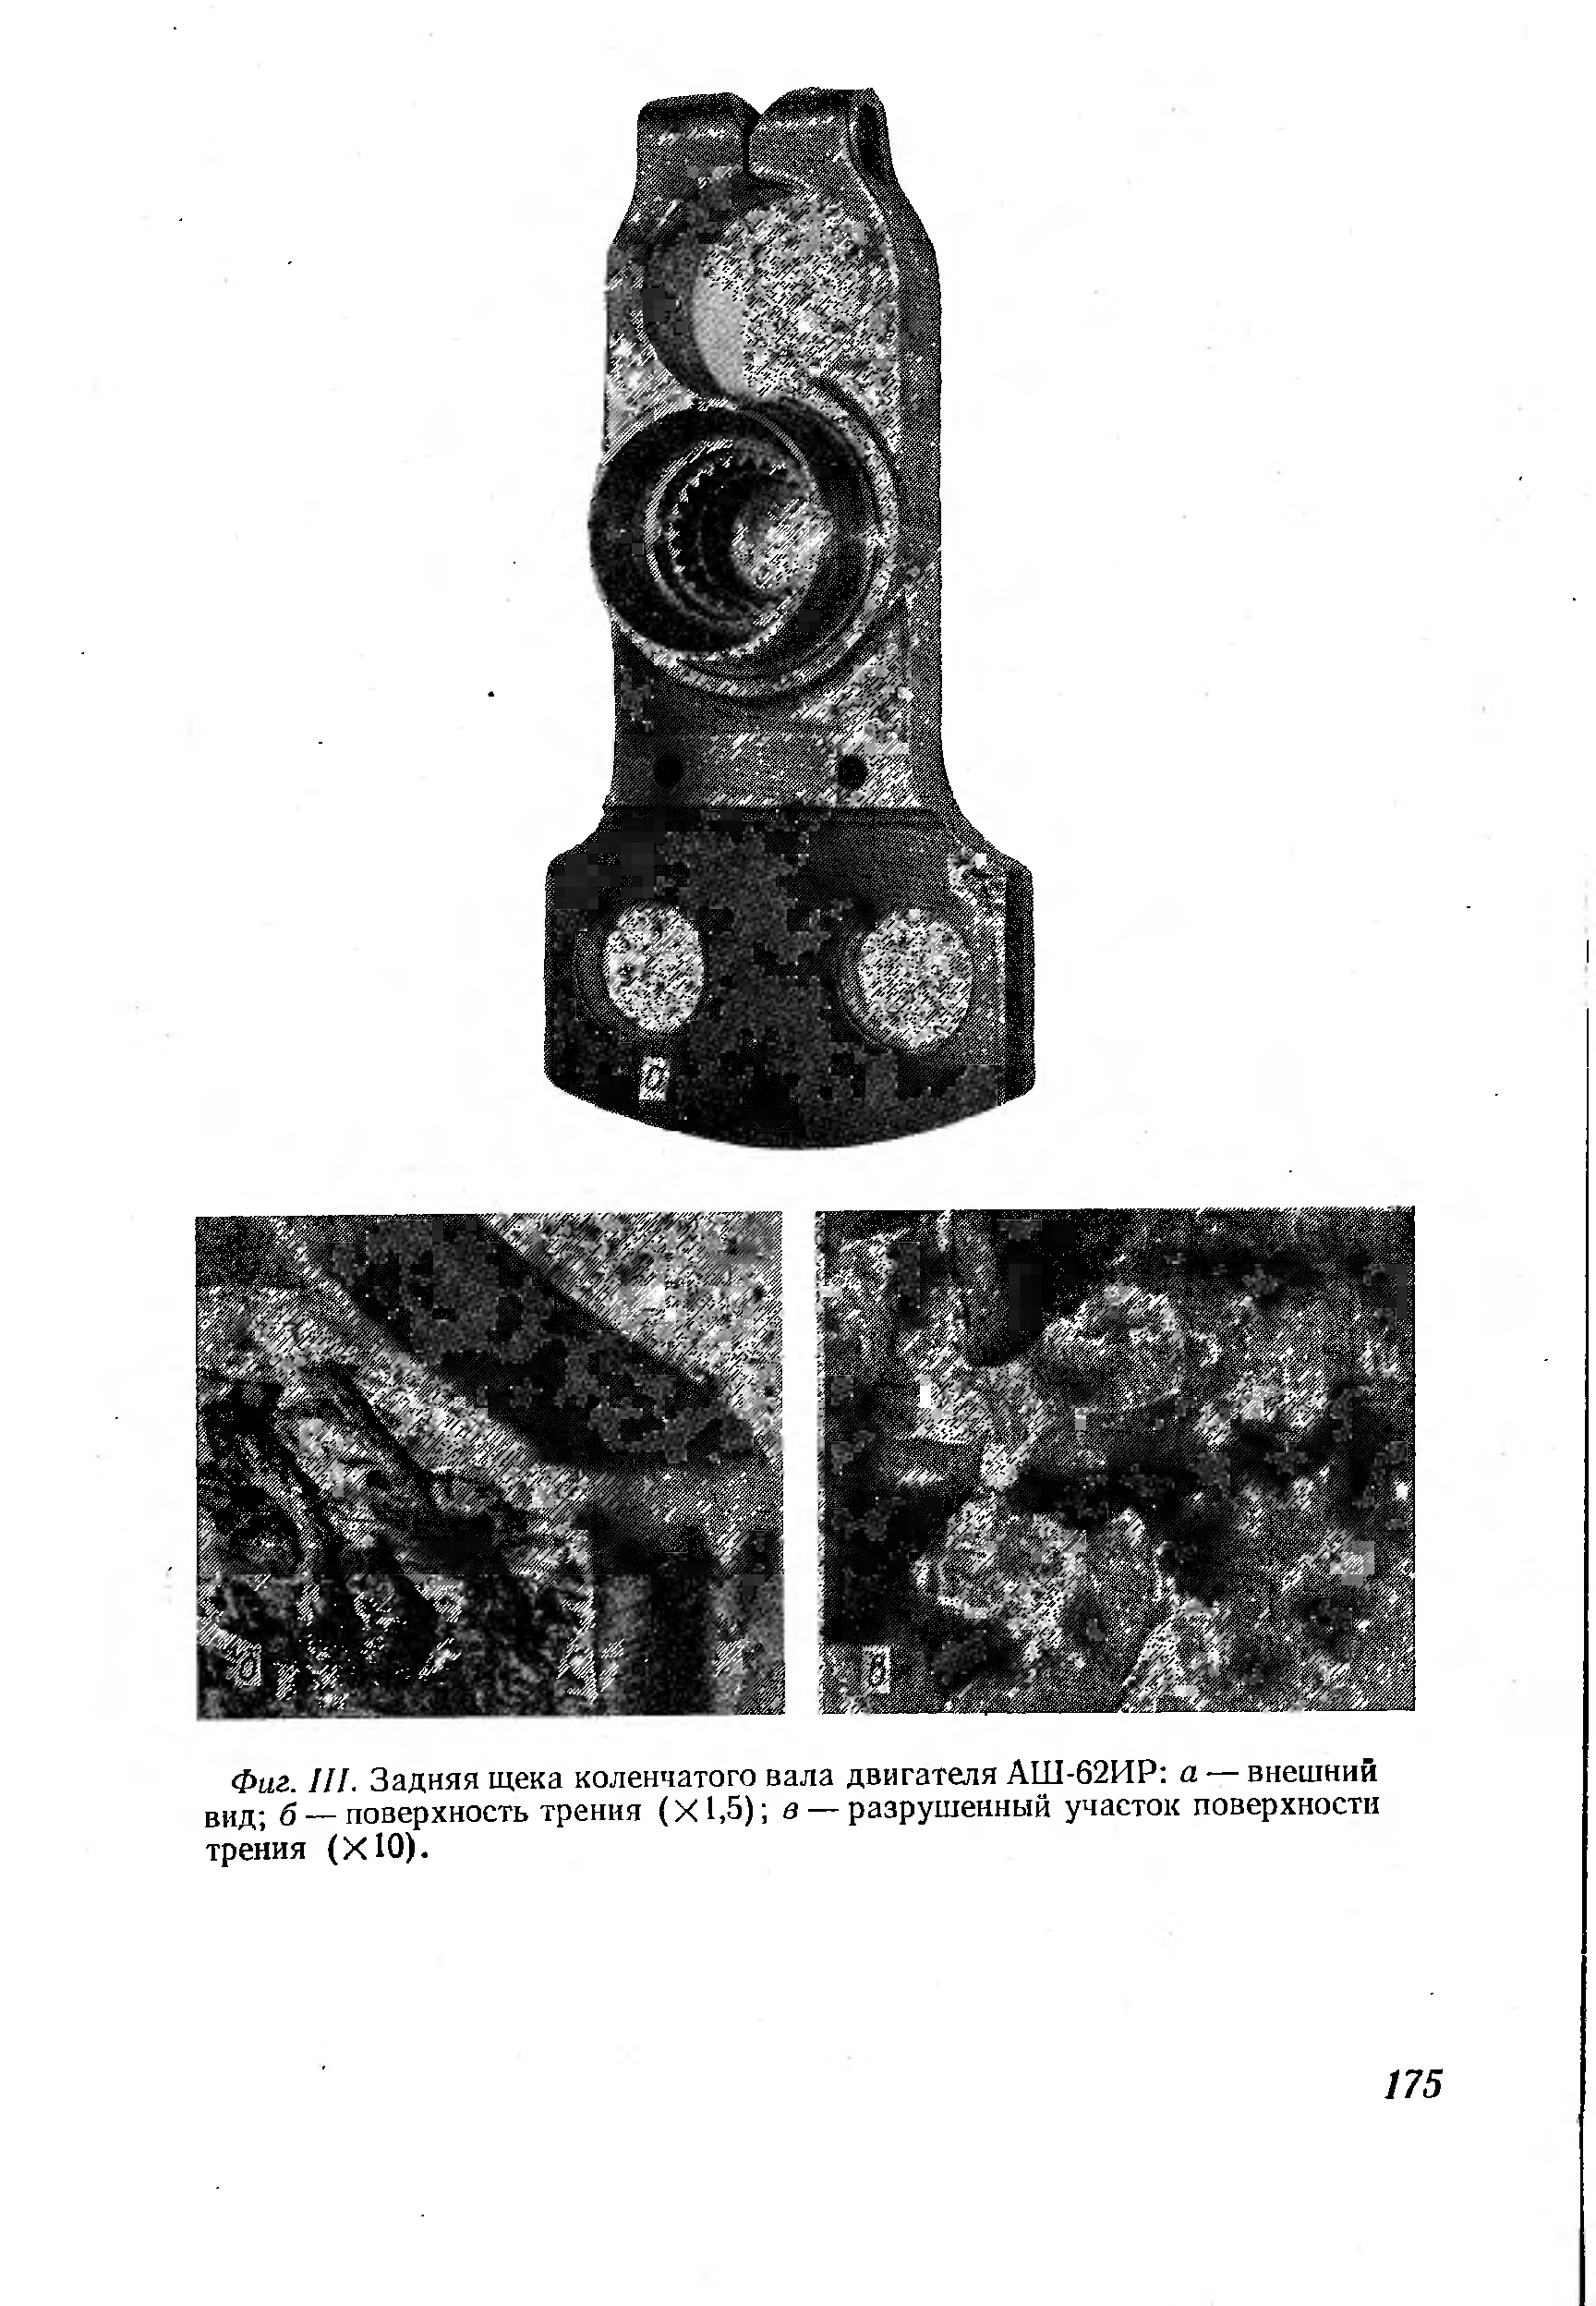 Фиг. III. Задняя щека коленчатого вала двигателя АШ-62ИР а — внешний вид б — <a href="/info/183977">поверхность трения</a> (Х1,5) а — разрушенный участок поверхности трения (ХЮ).